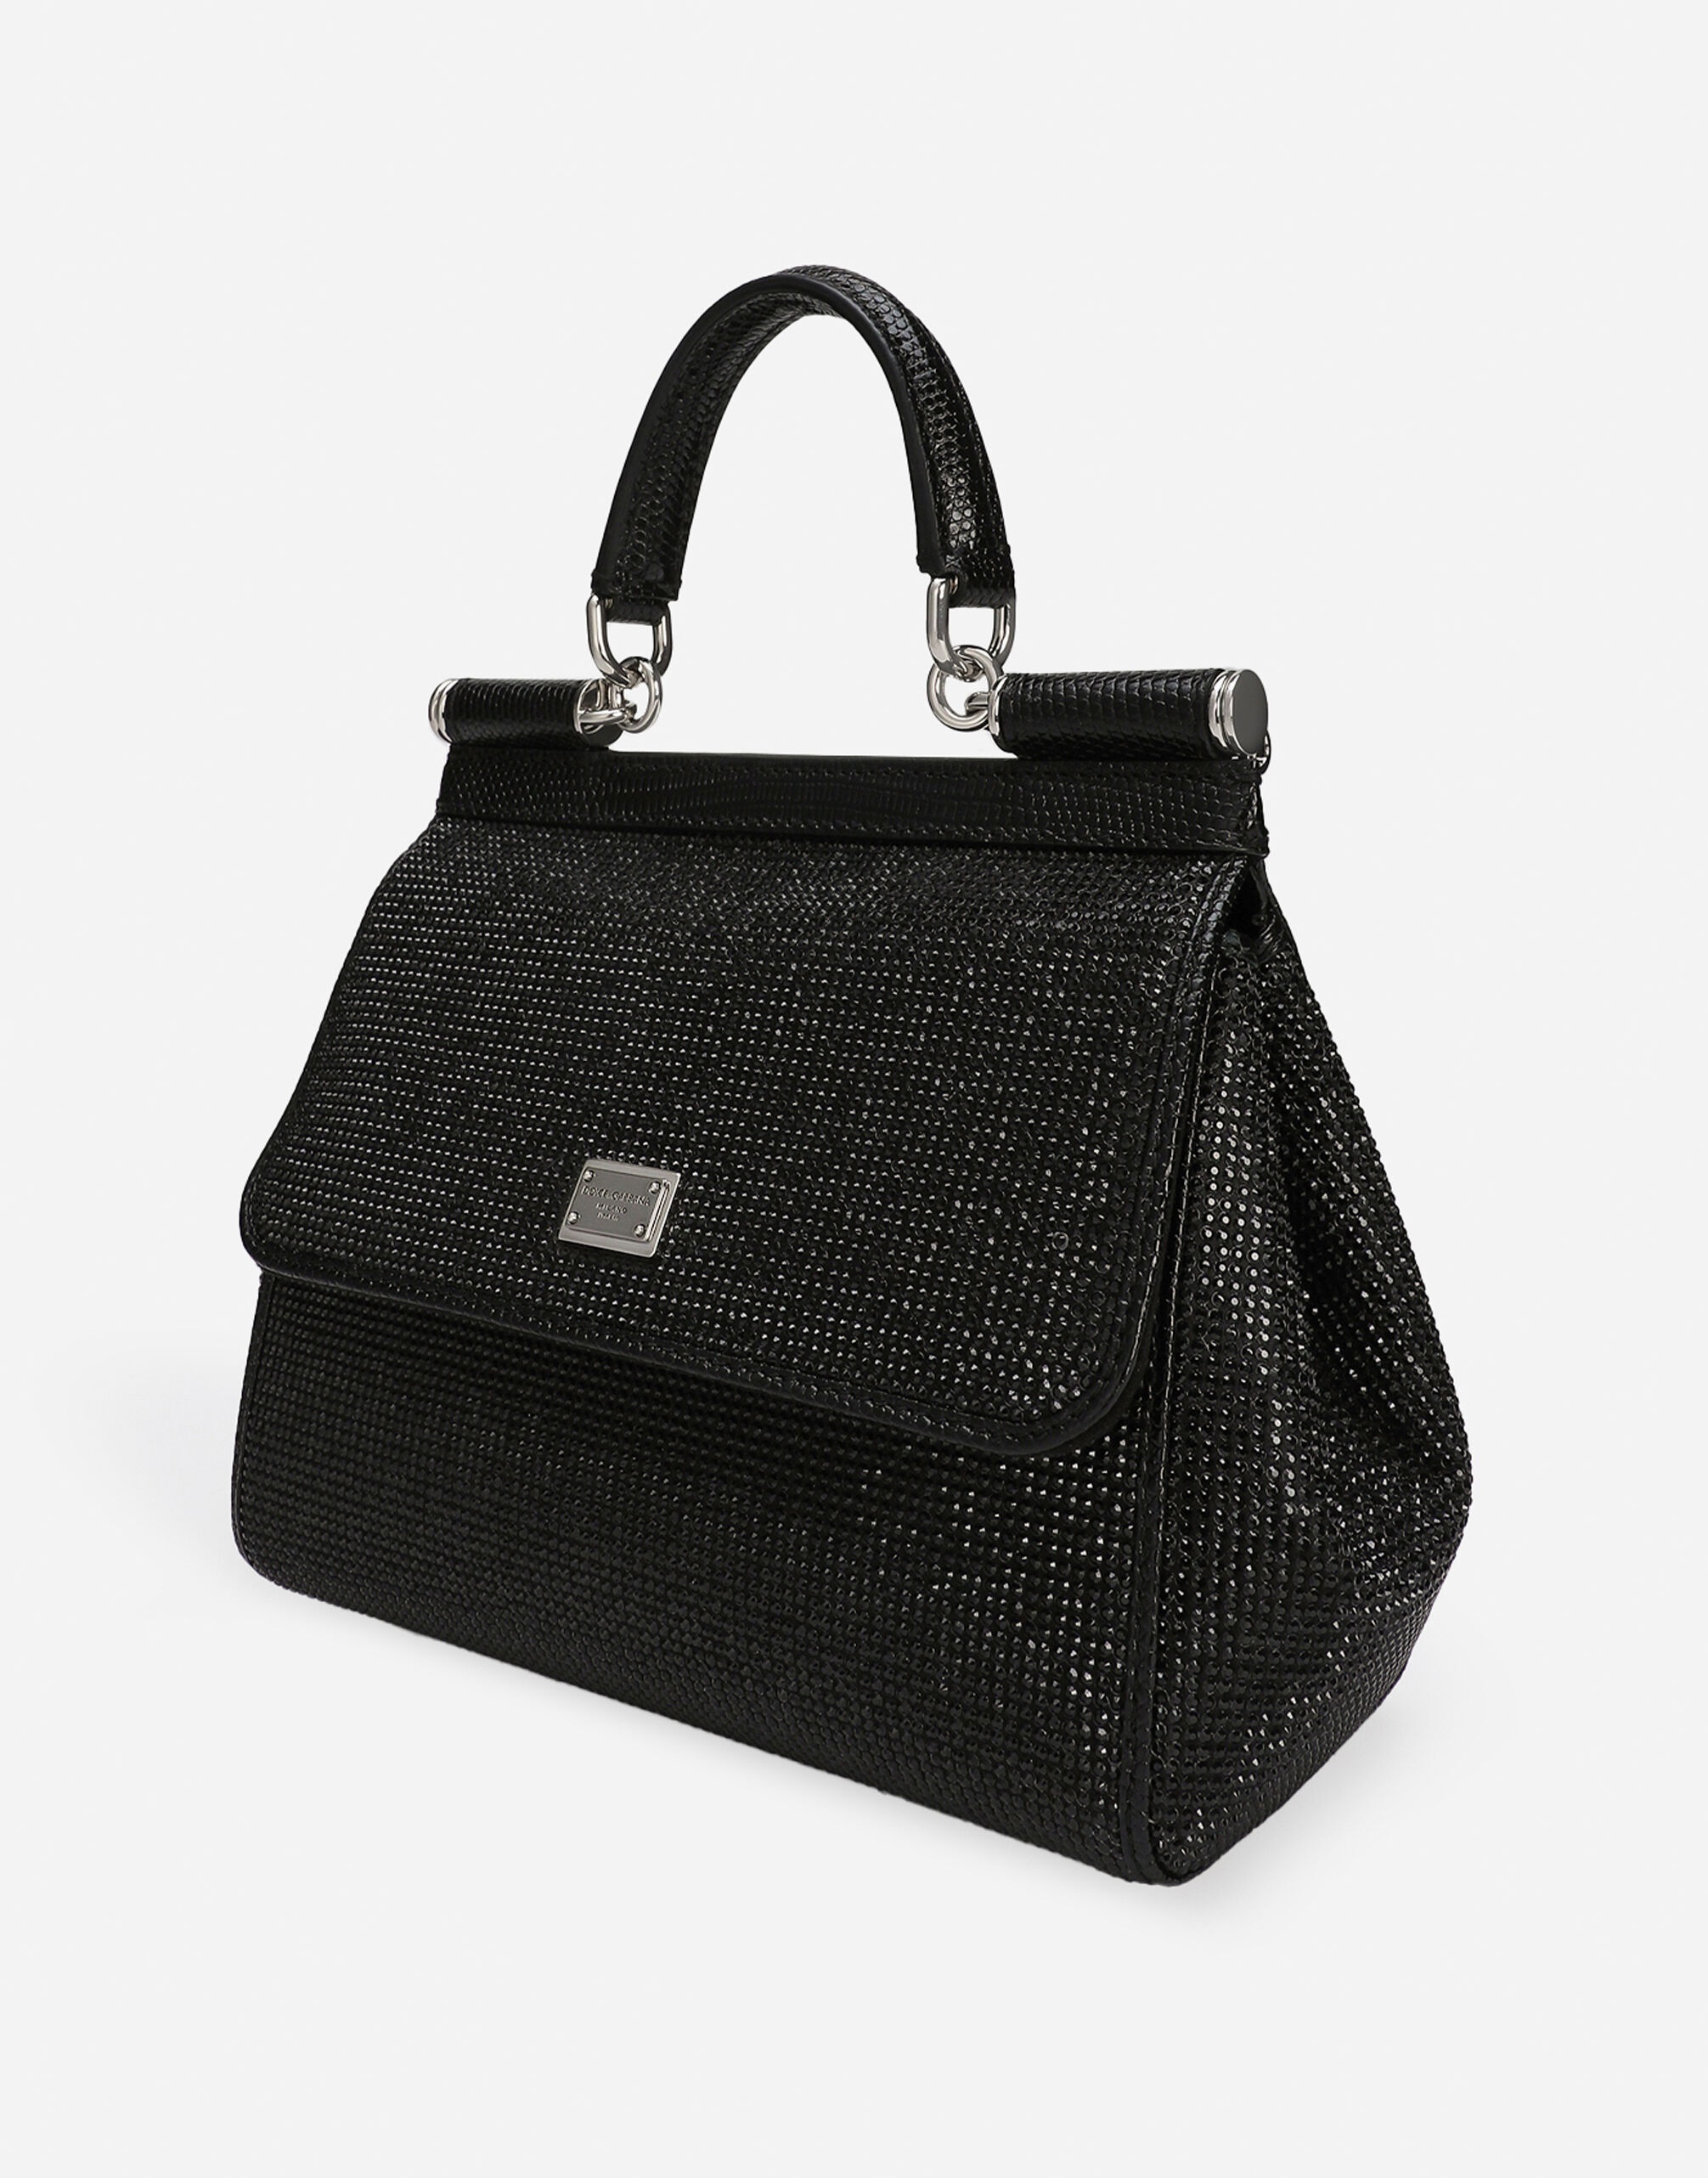 Medium Sicily handbag - 8